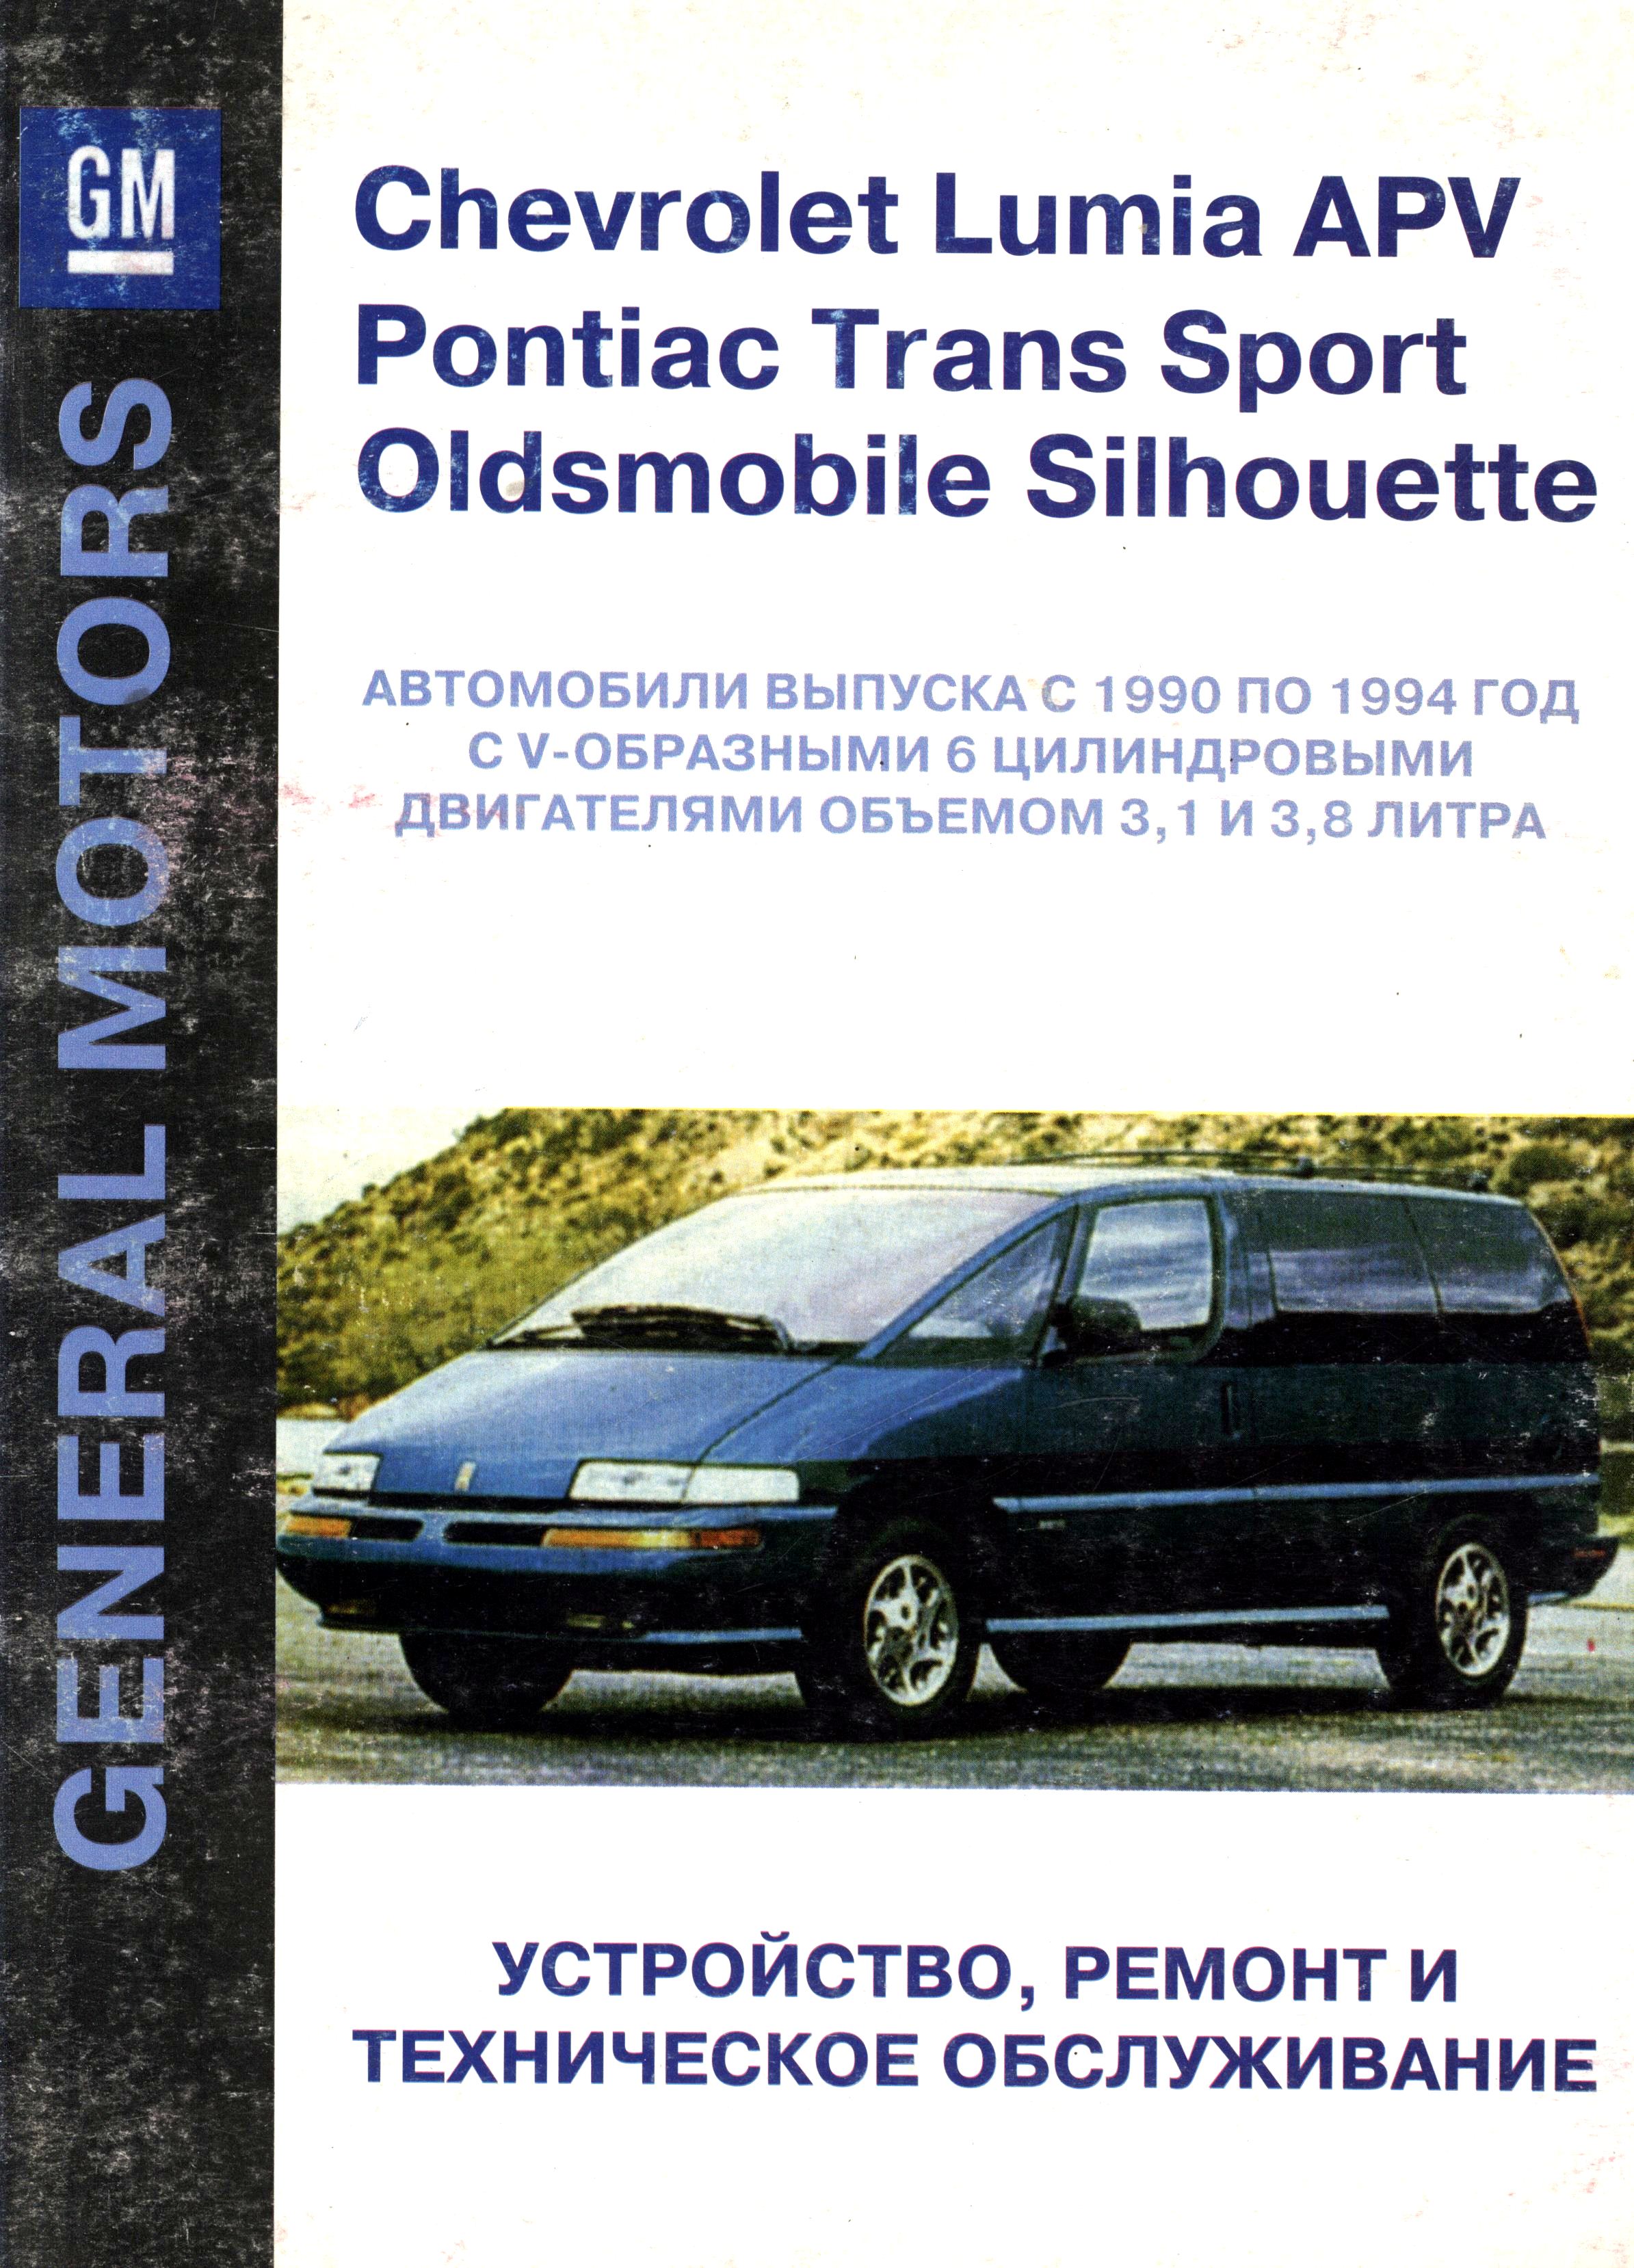 PONTIAC TRANS SPORT 1990-1994 Справочник по ремонту и техническокму обслуживанию